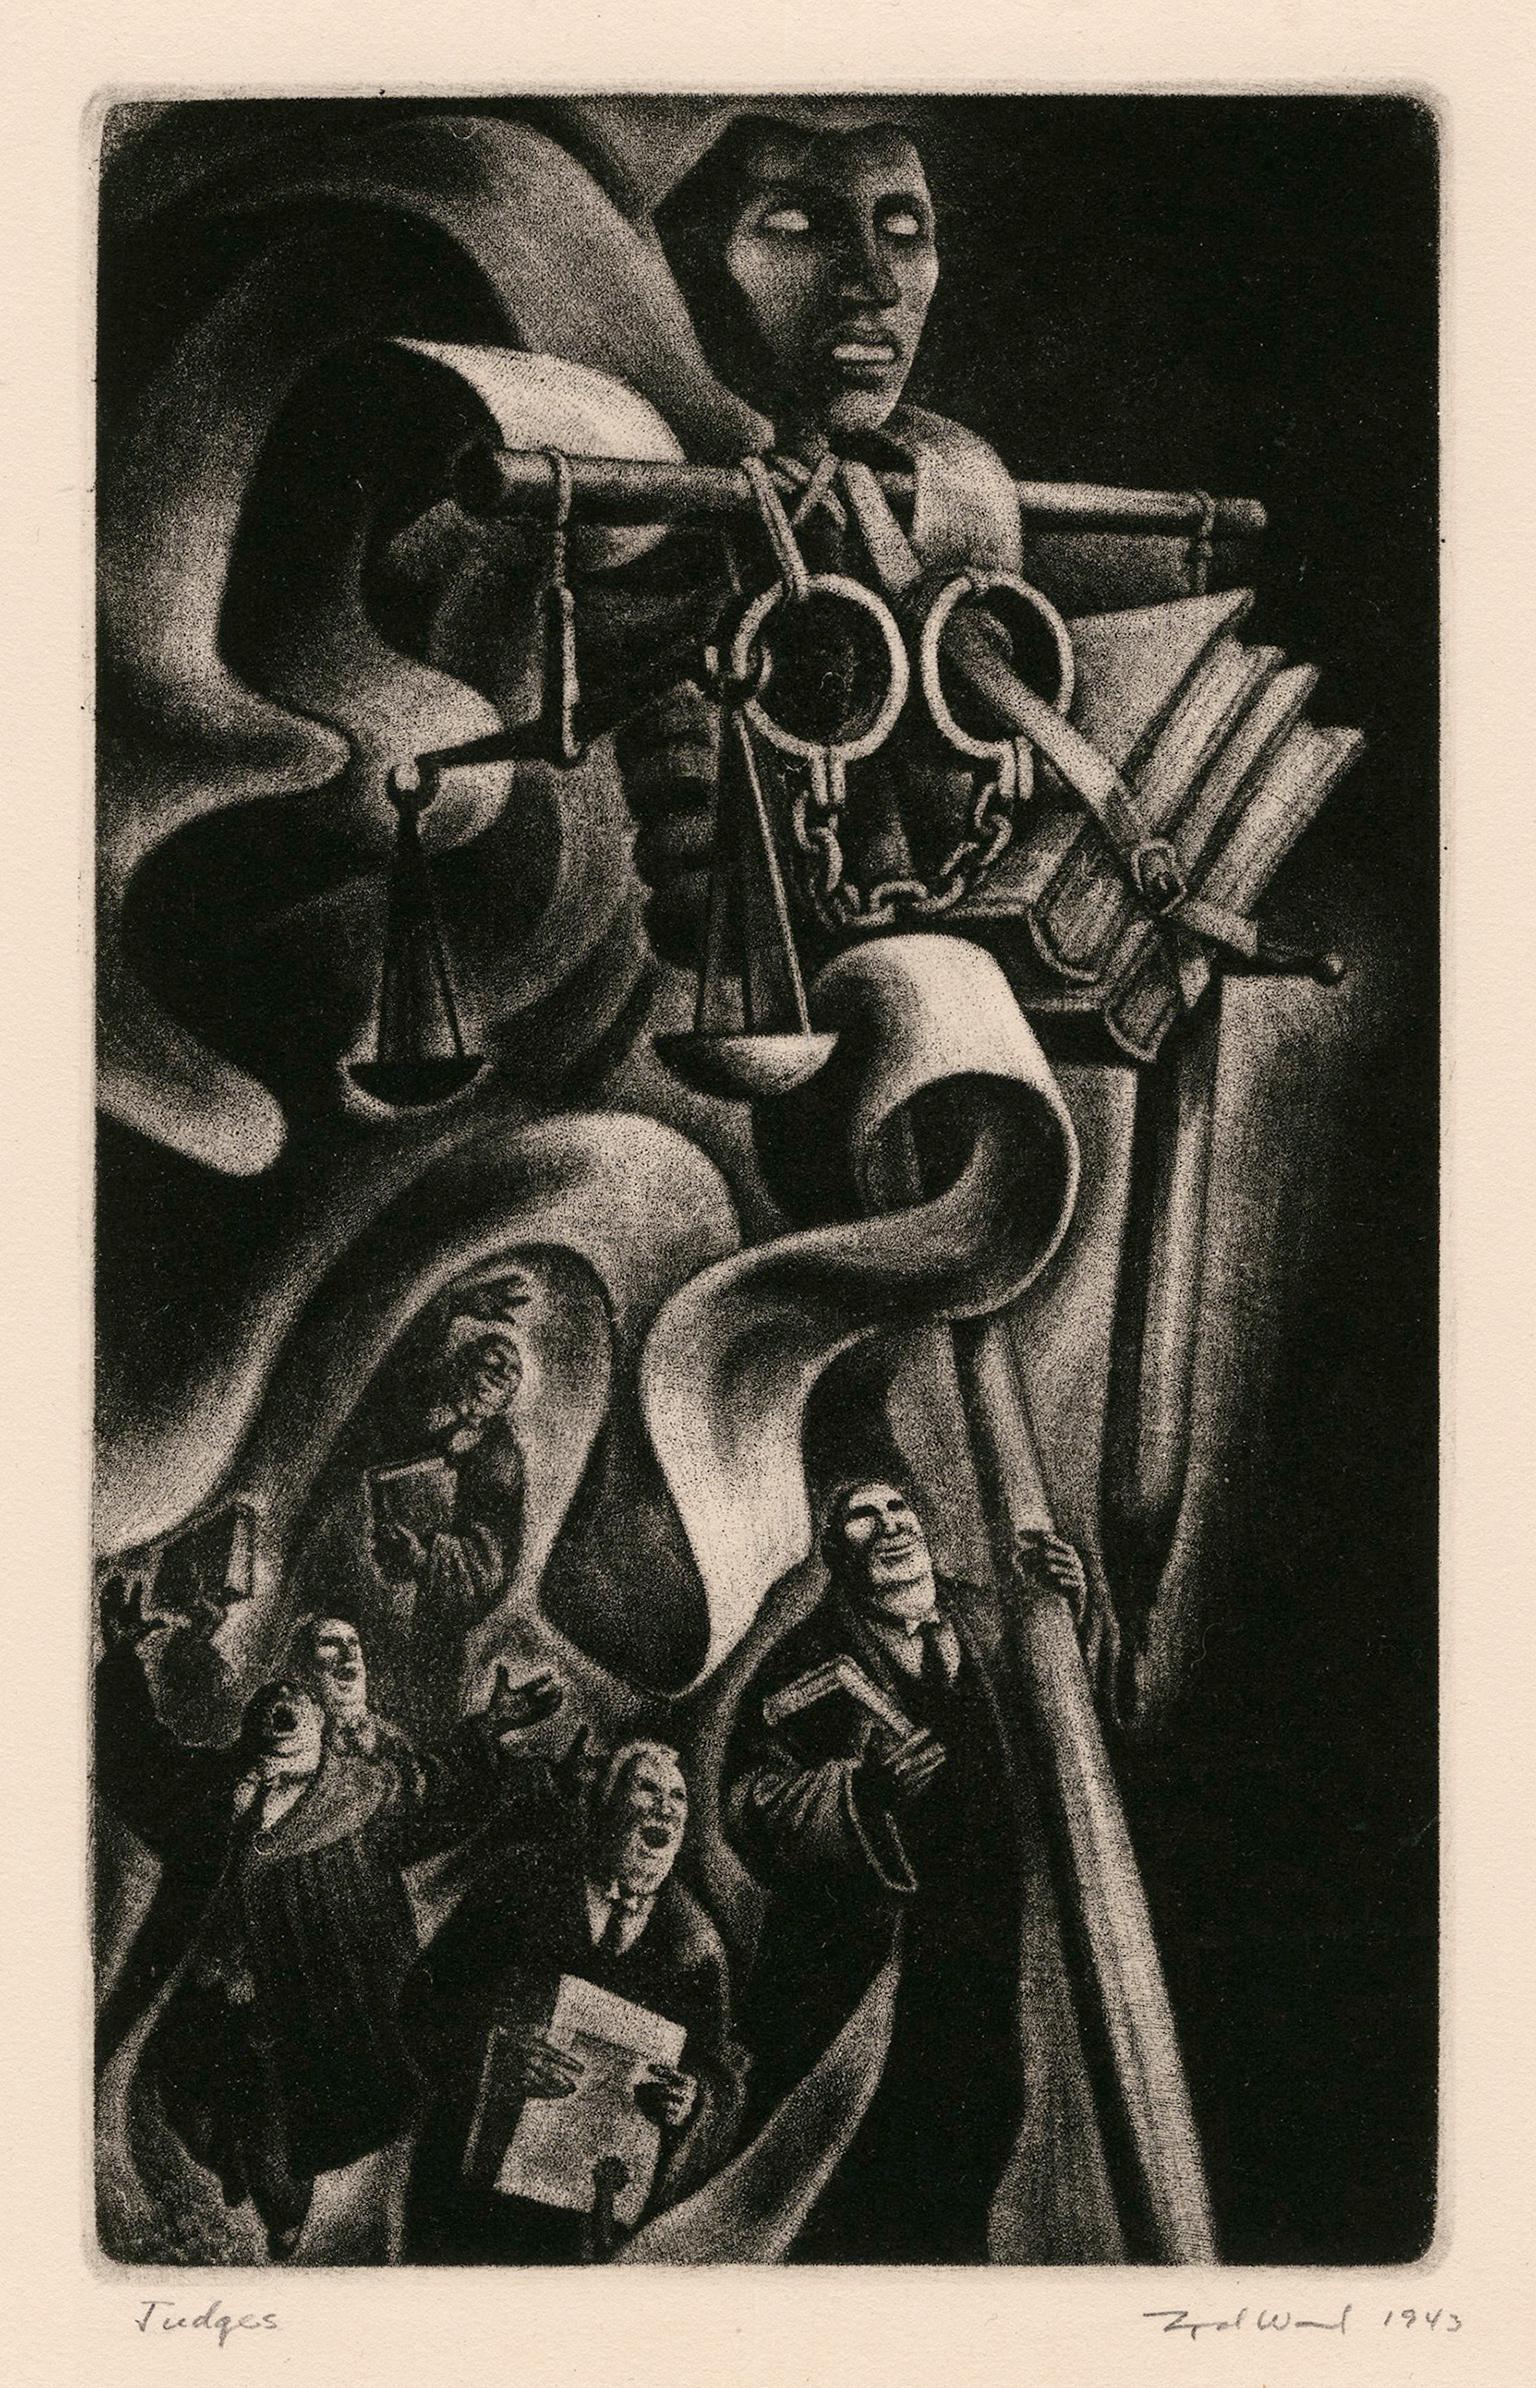 Juges" de "L'éloge de la folie" - Modernisme graphique des années 1940